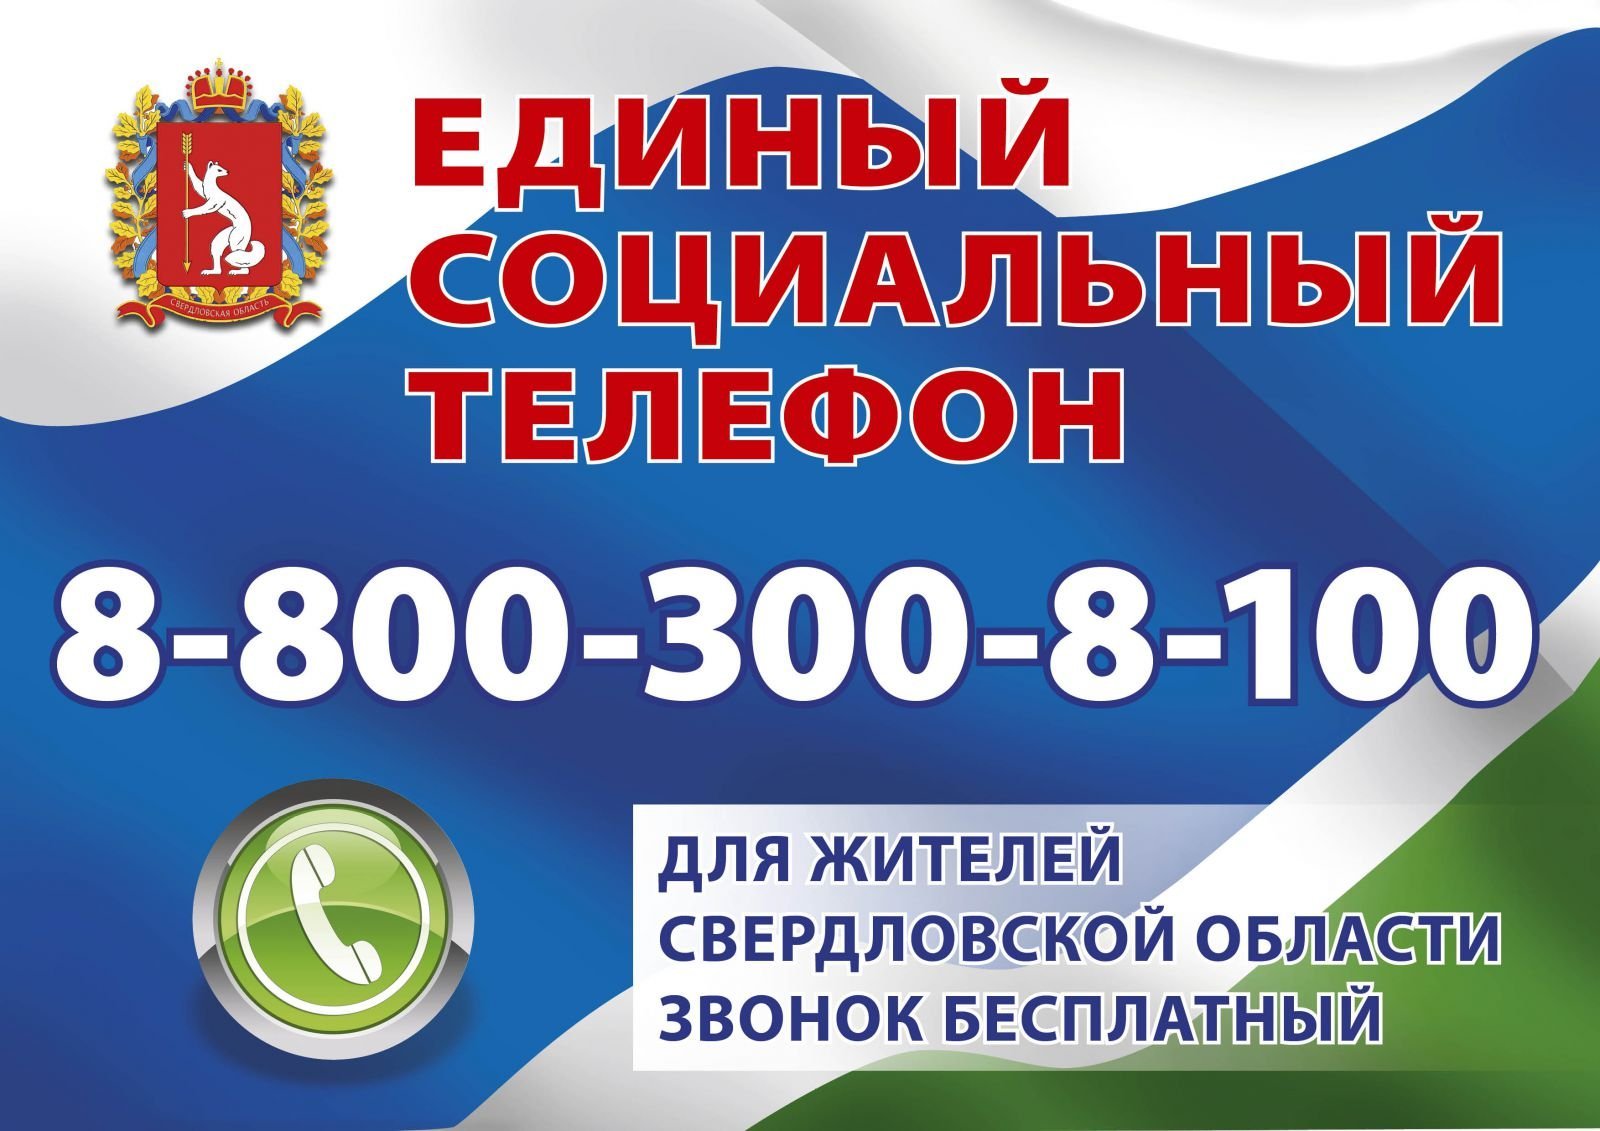 Онлайн-консультации для жителей Свердловской области по единому социальному телефону